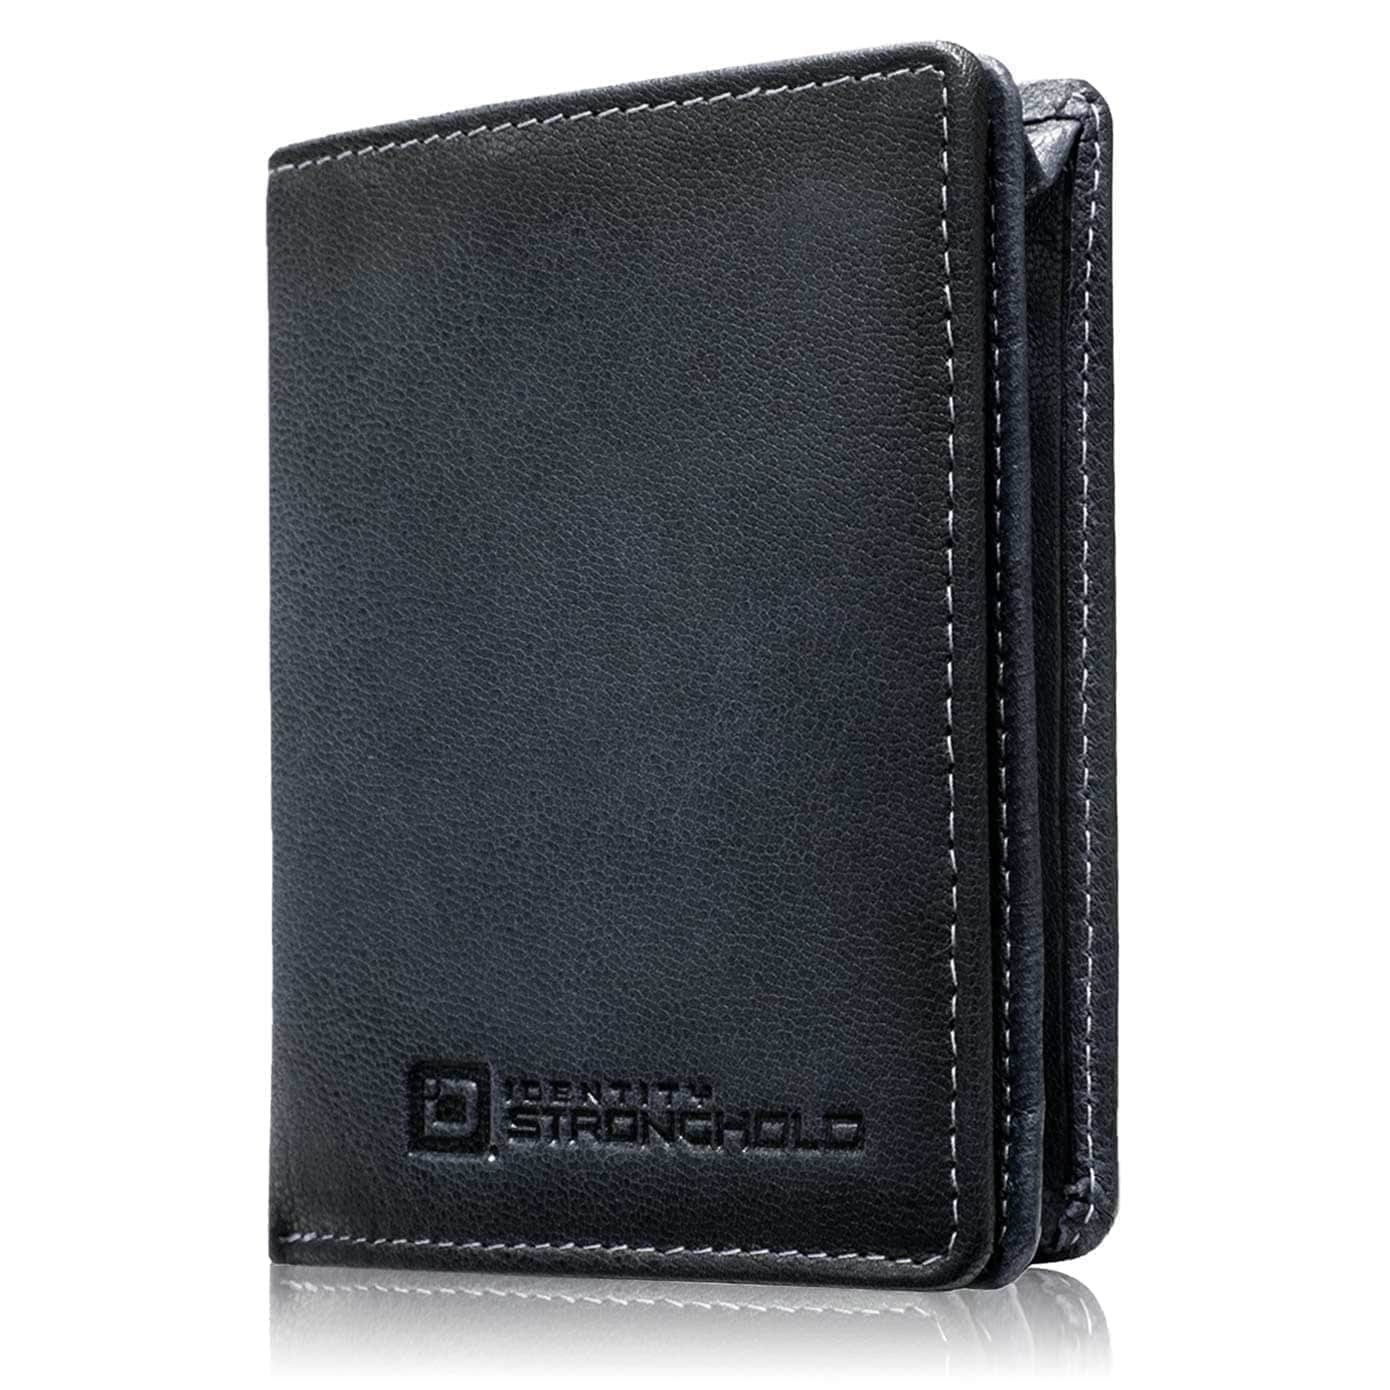 ID Stronghold Men's Wallet Mini Ladies Black The Waltlet - Maximum Storage RFID Secure Minimalist Wallet